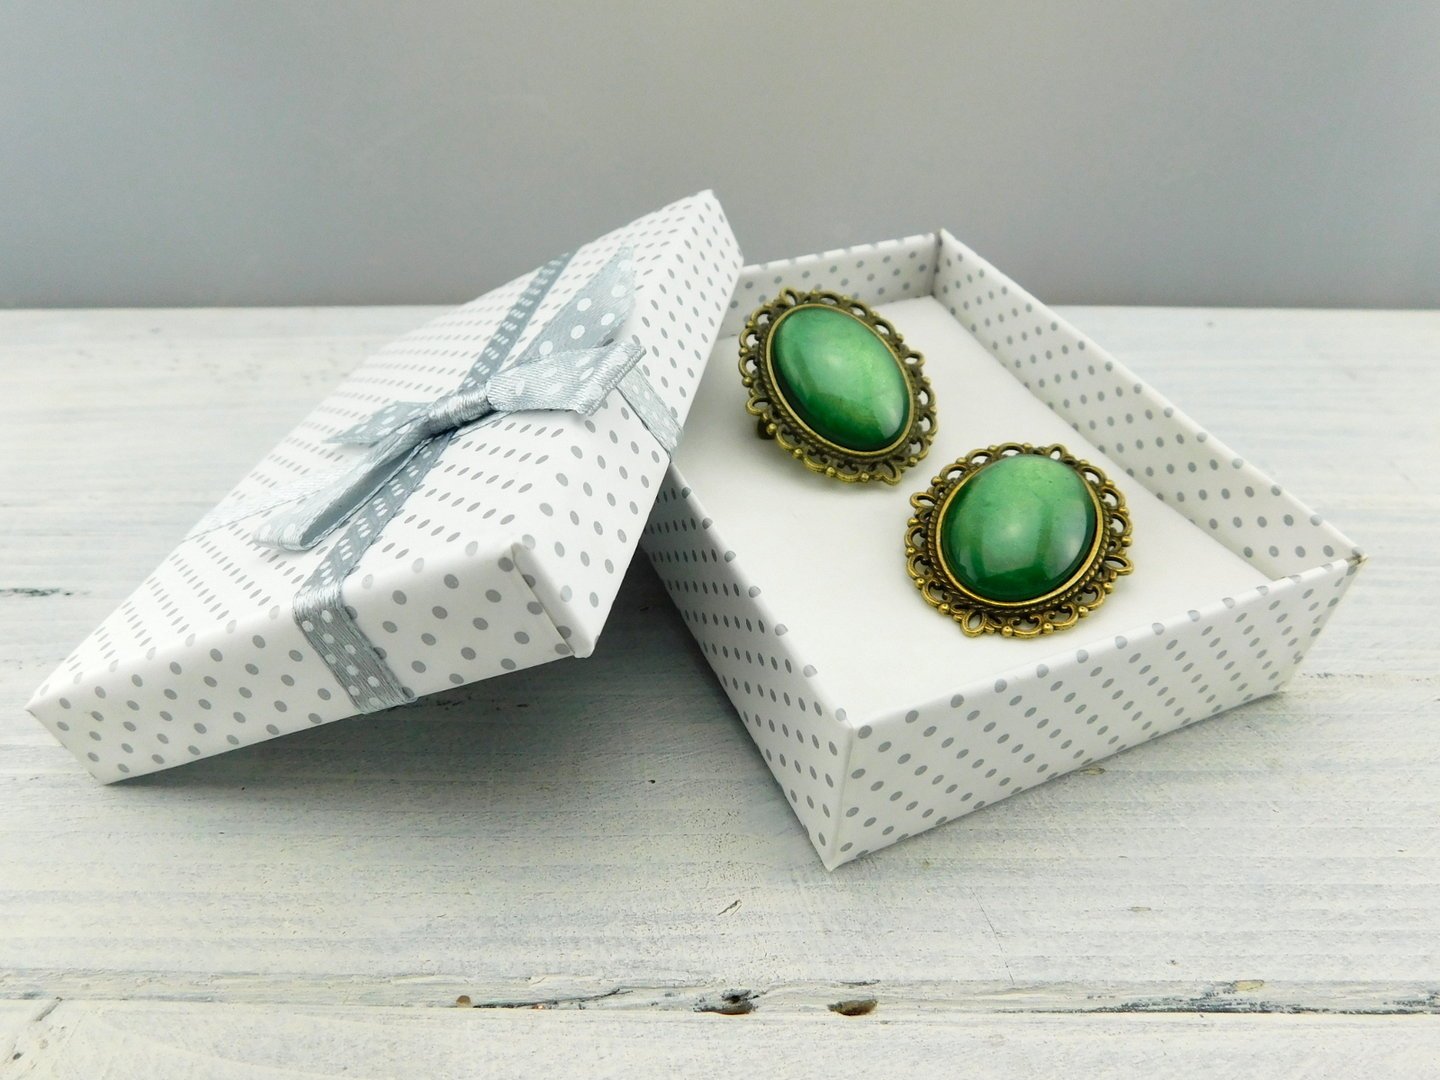 Geschenkset "Maigrün" mit Ring und Brosche - Vintage Schmuckstübchen